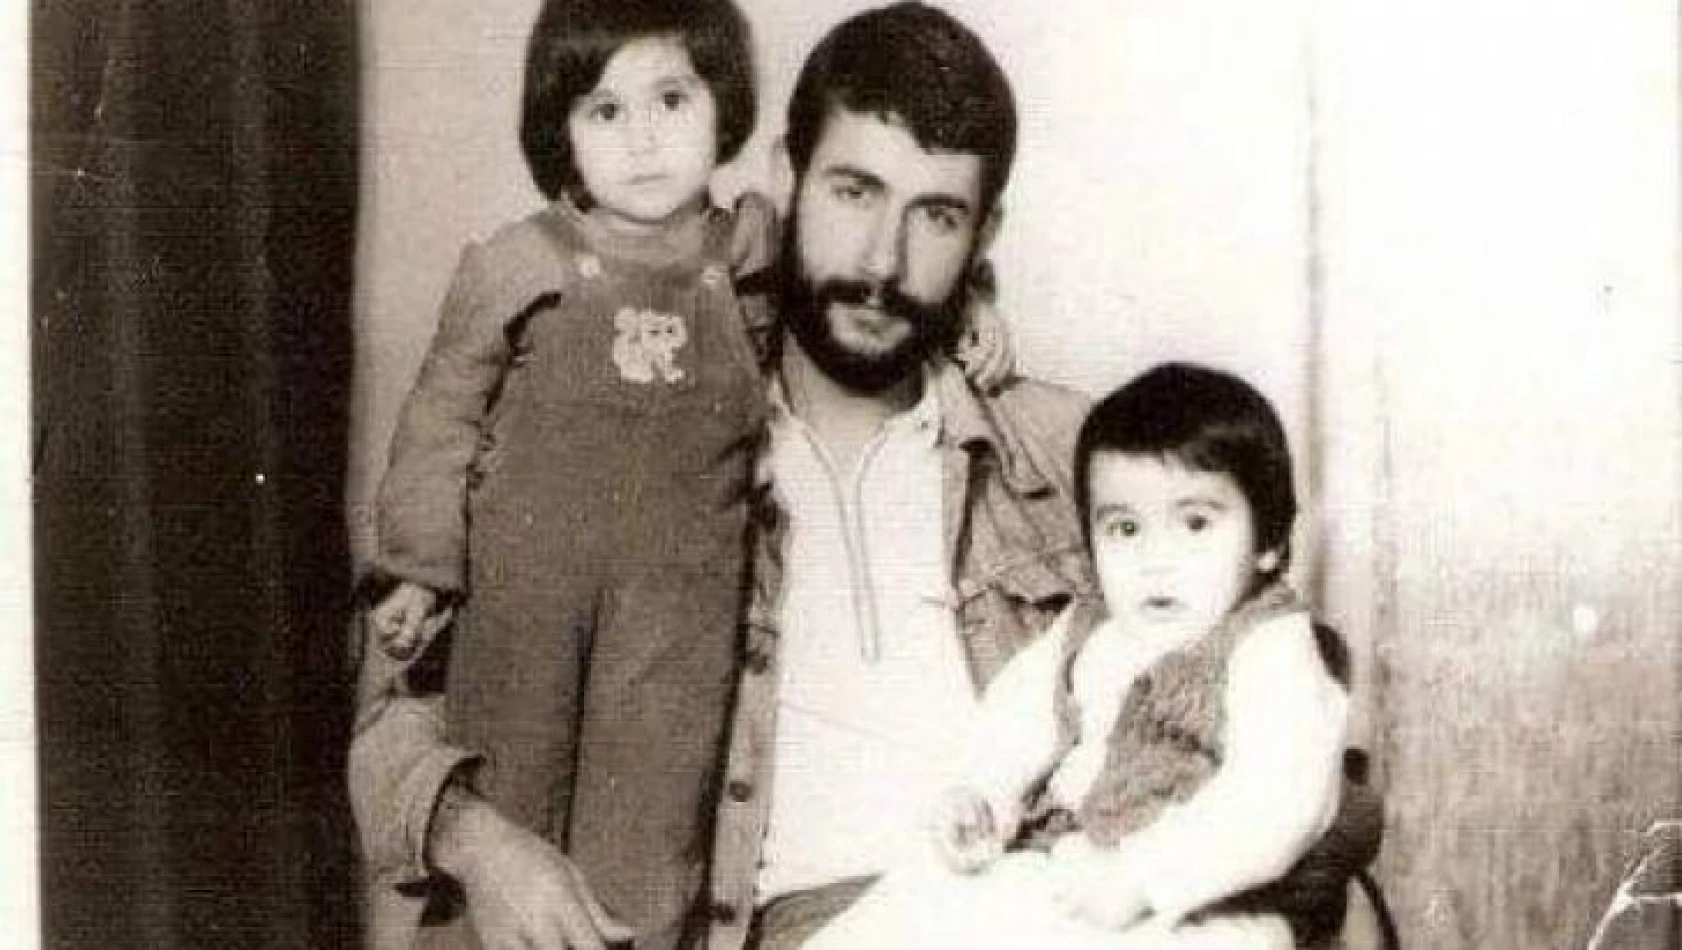 İdamlık mahkumların avukatı Özbay, 12 Eylül sonrası idam edilen Orkan'ın son anlarını İHA'ya anlattı